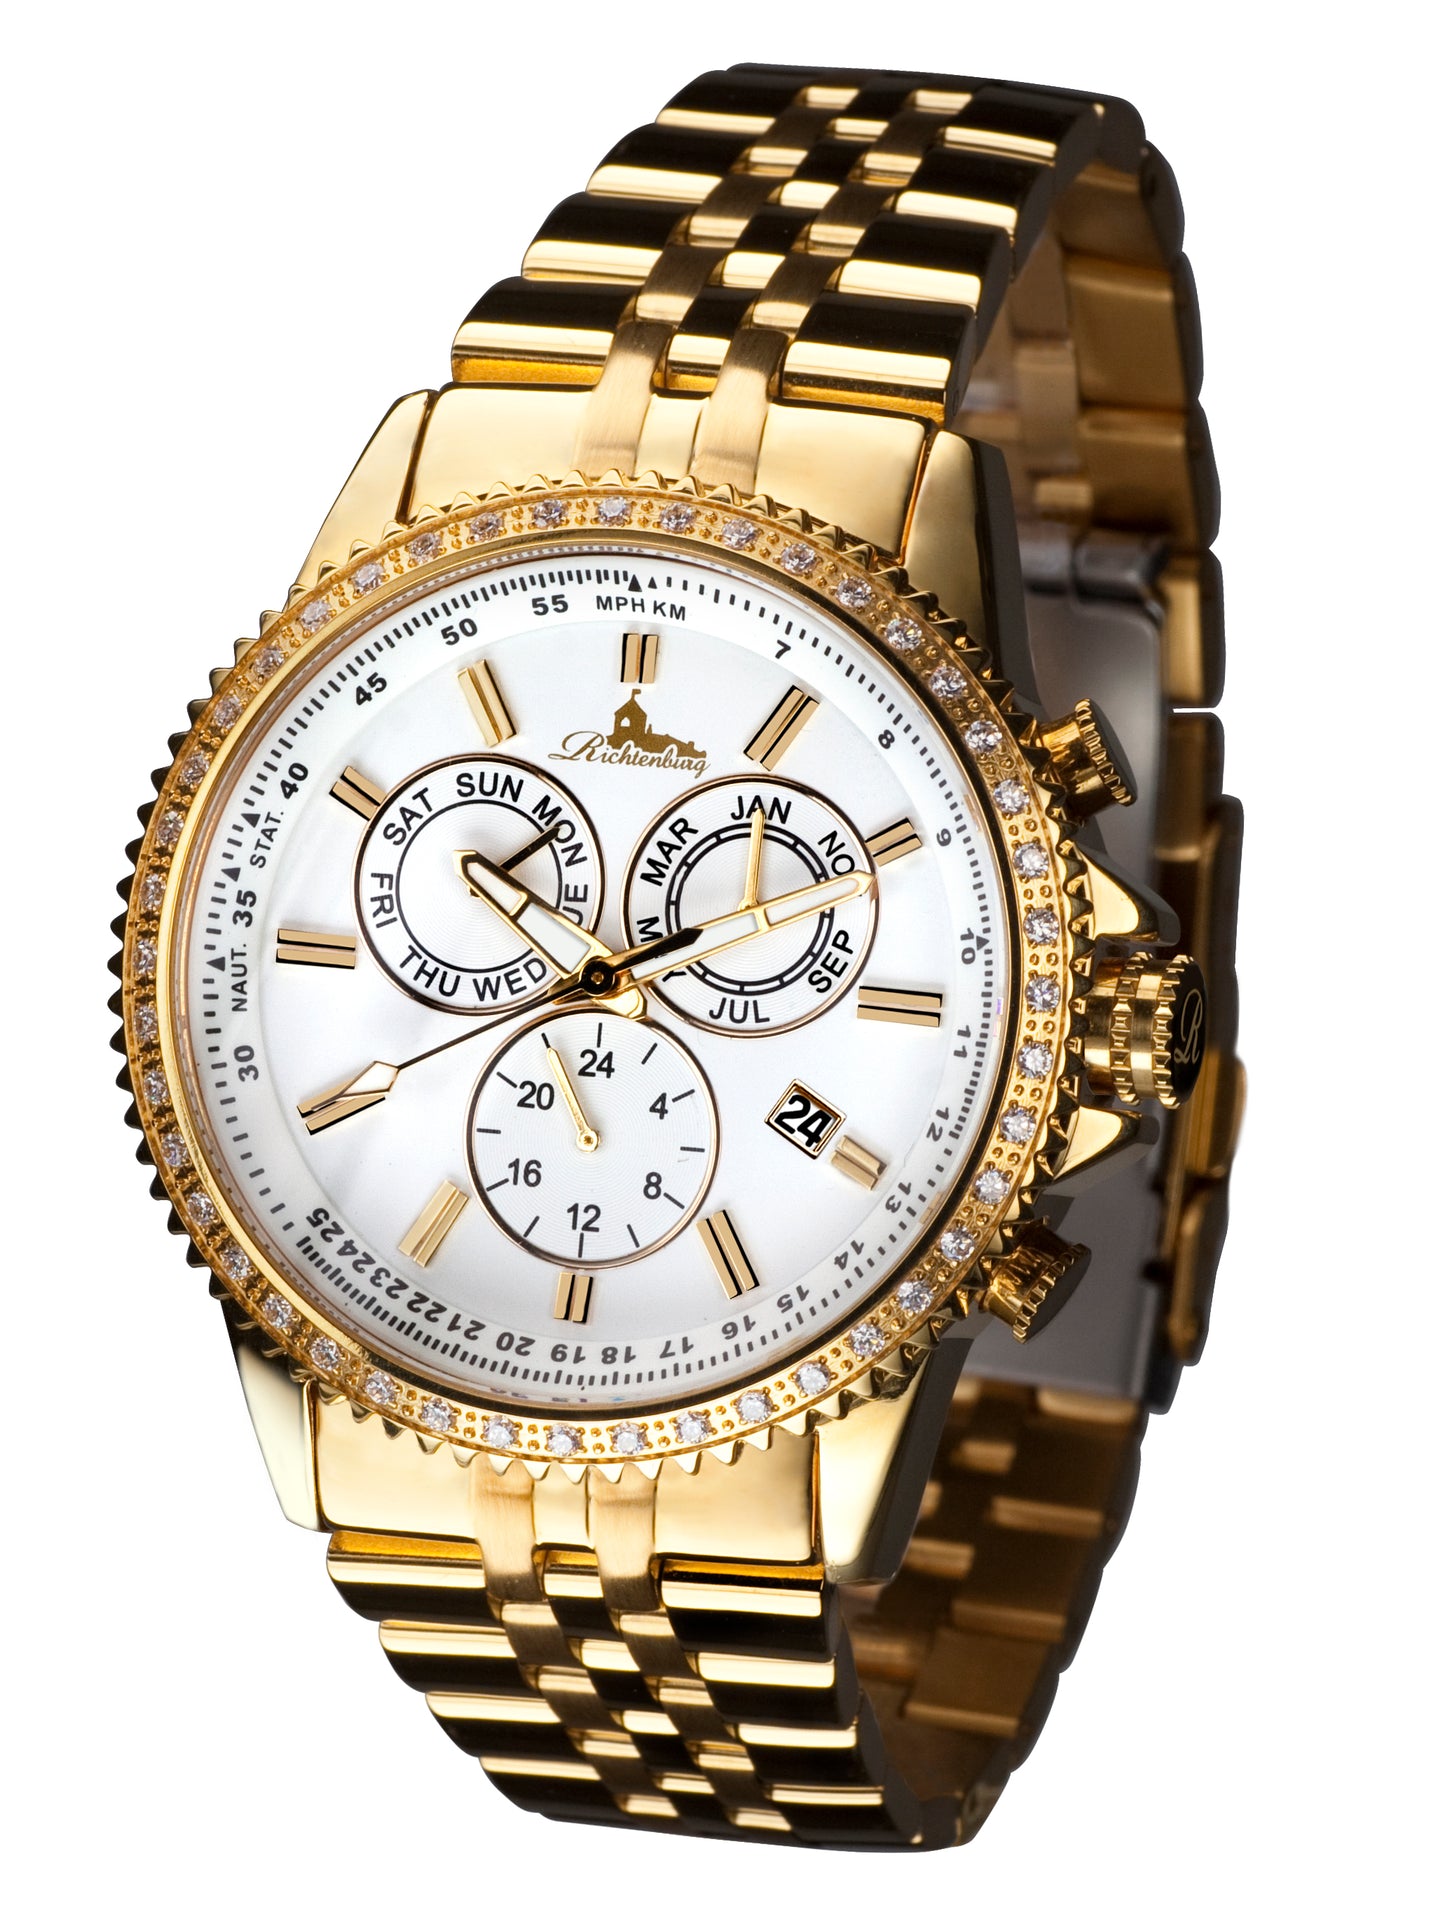 Automatic watches — Cassiopeia — Richtenburg — gold IP white